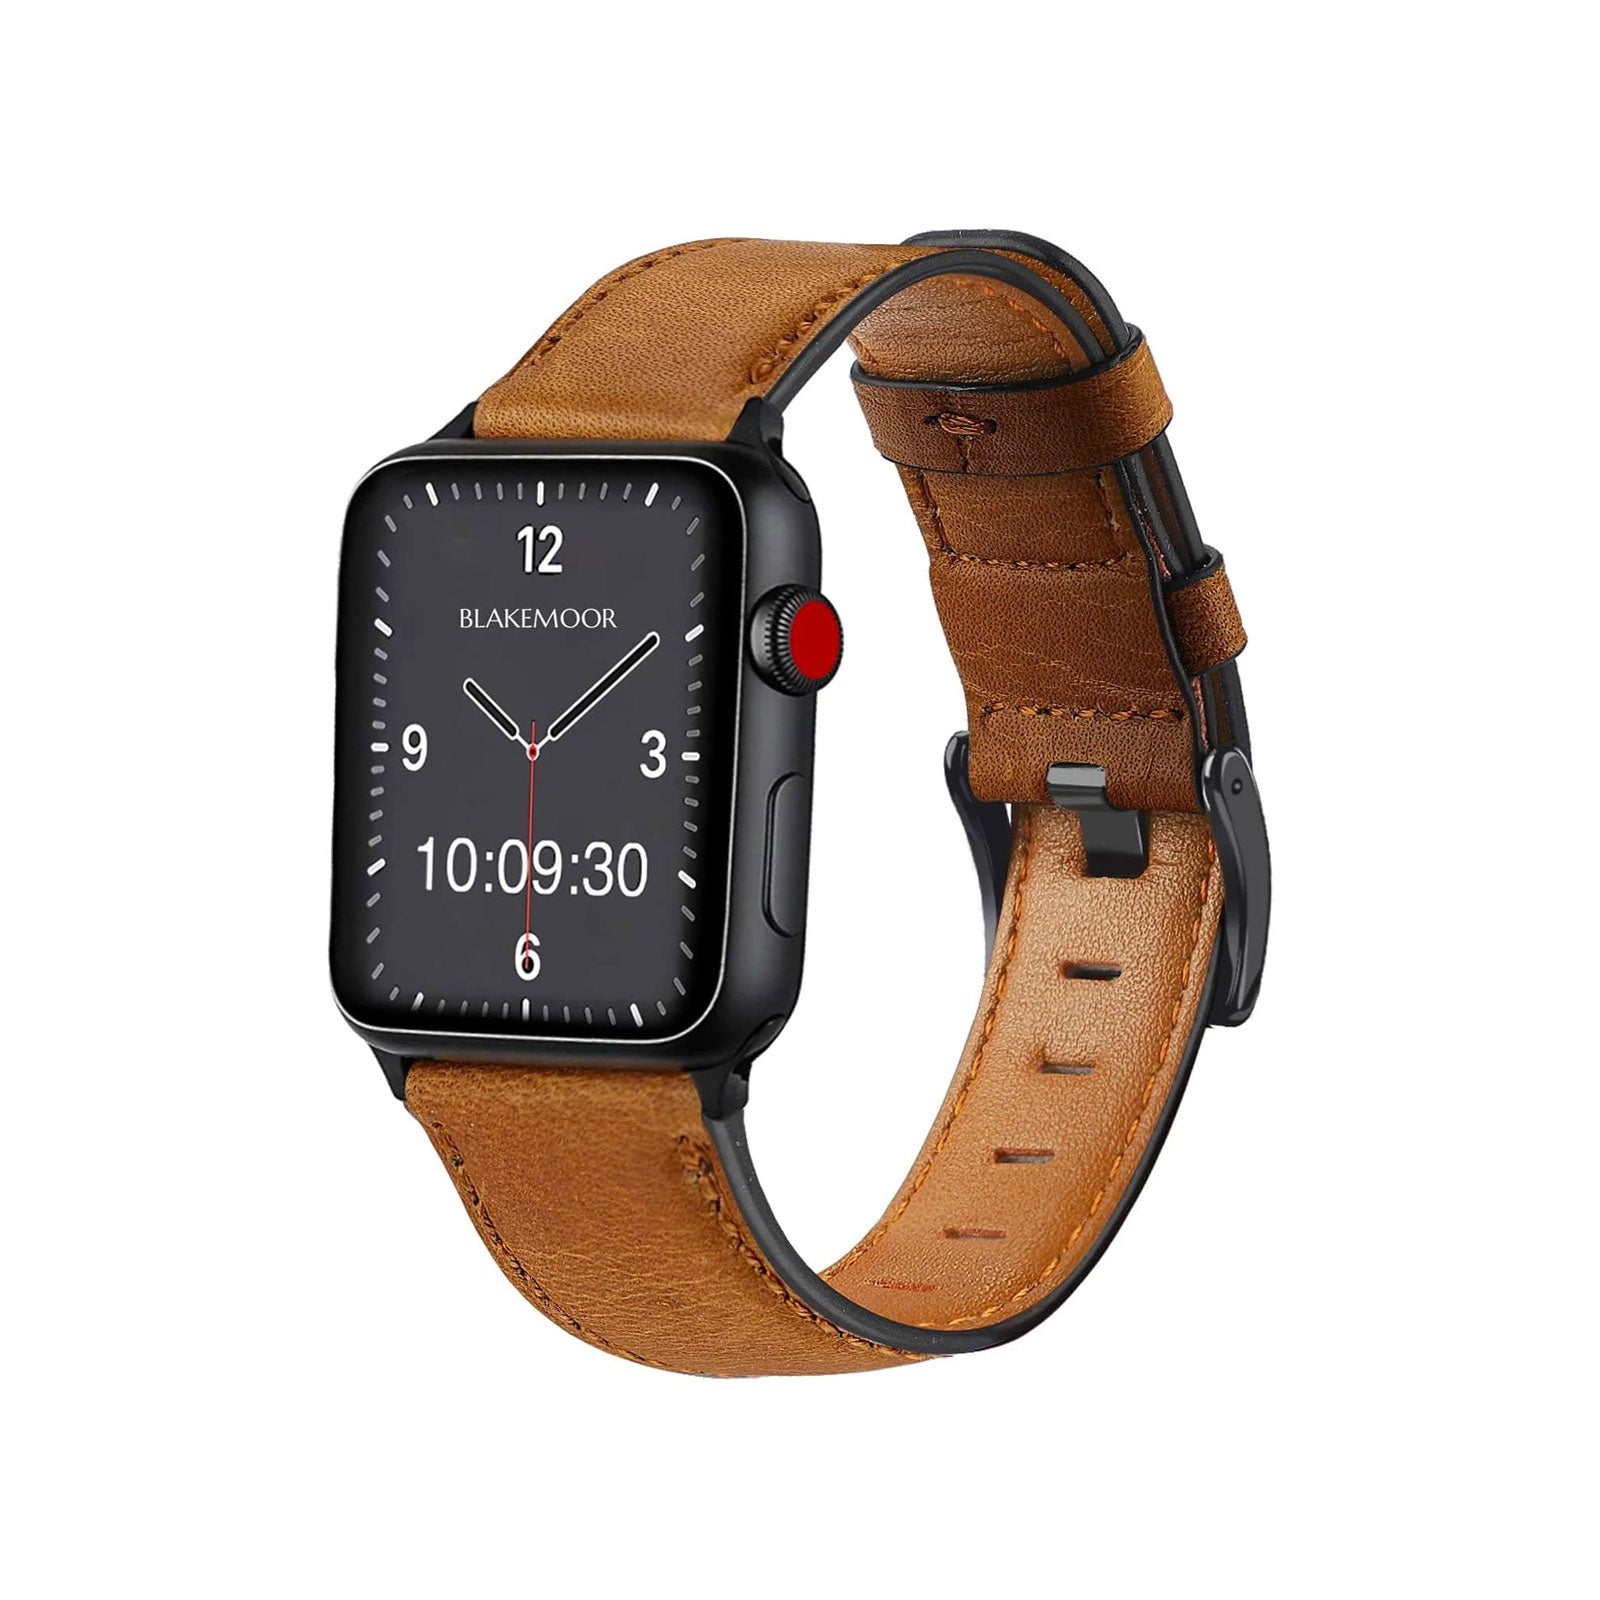 Burnham Tan Watch Strap For Apple Watch